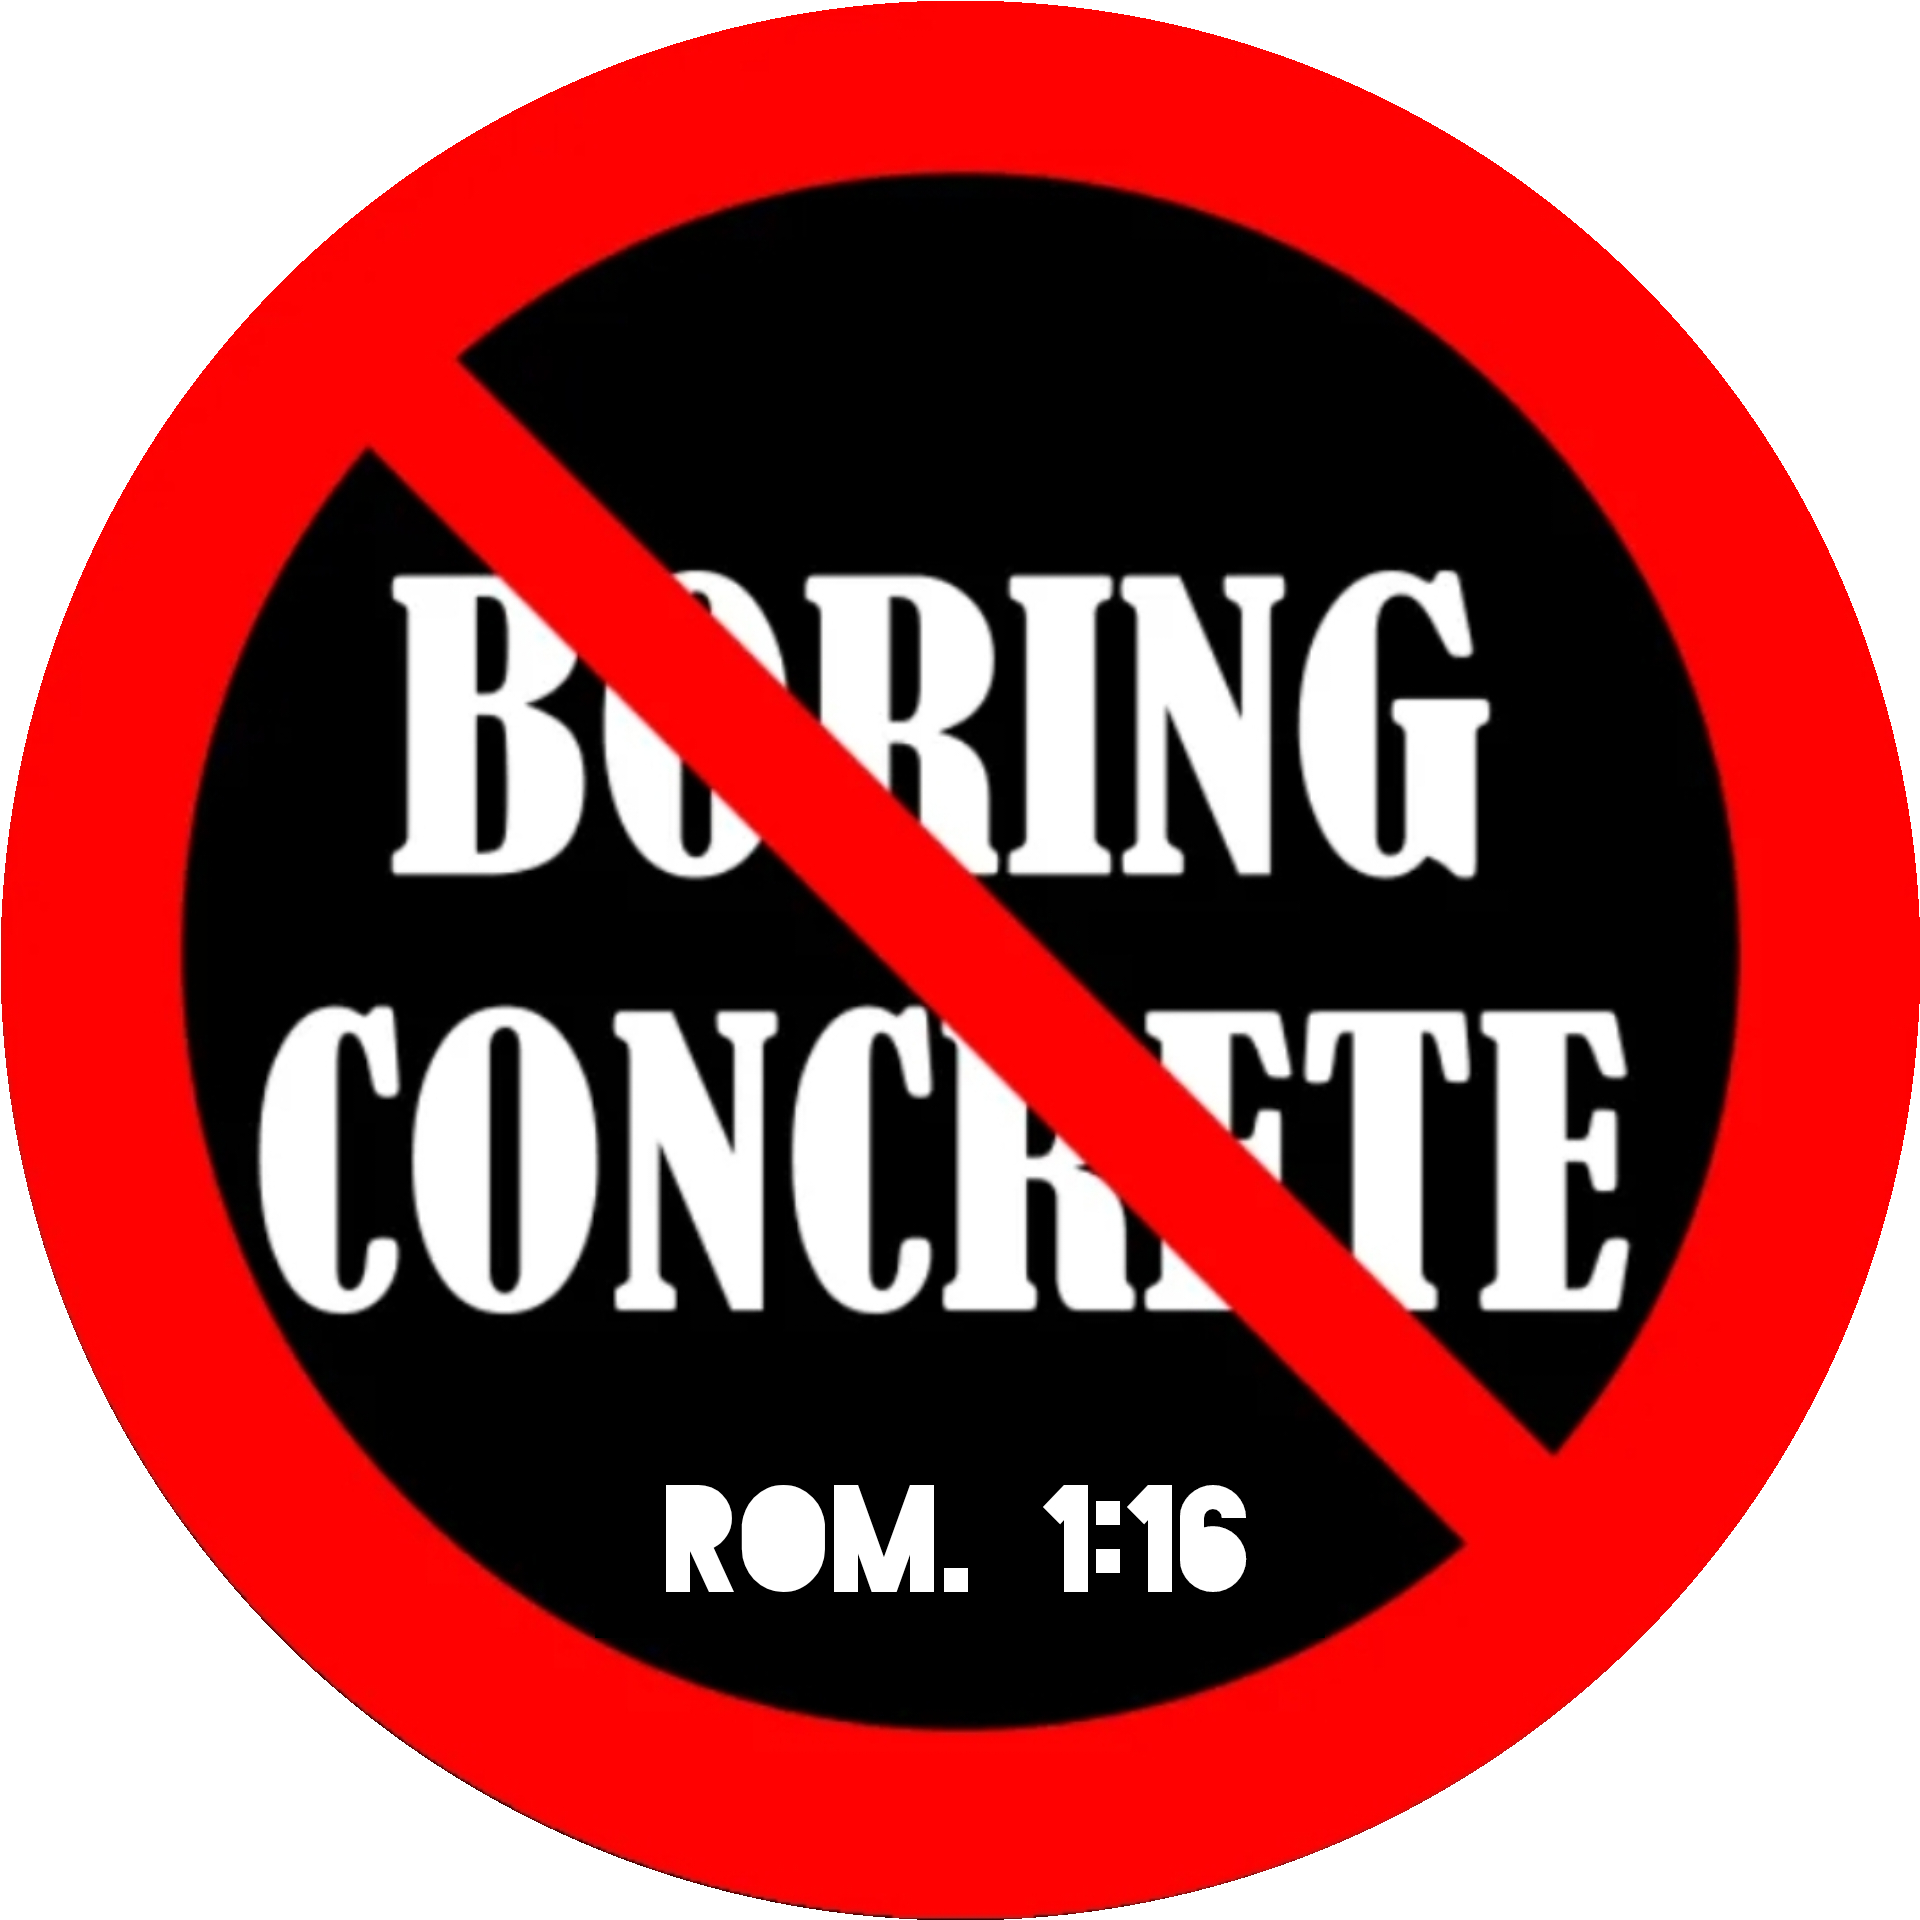 No Boring Concrete